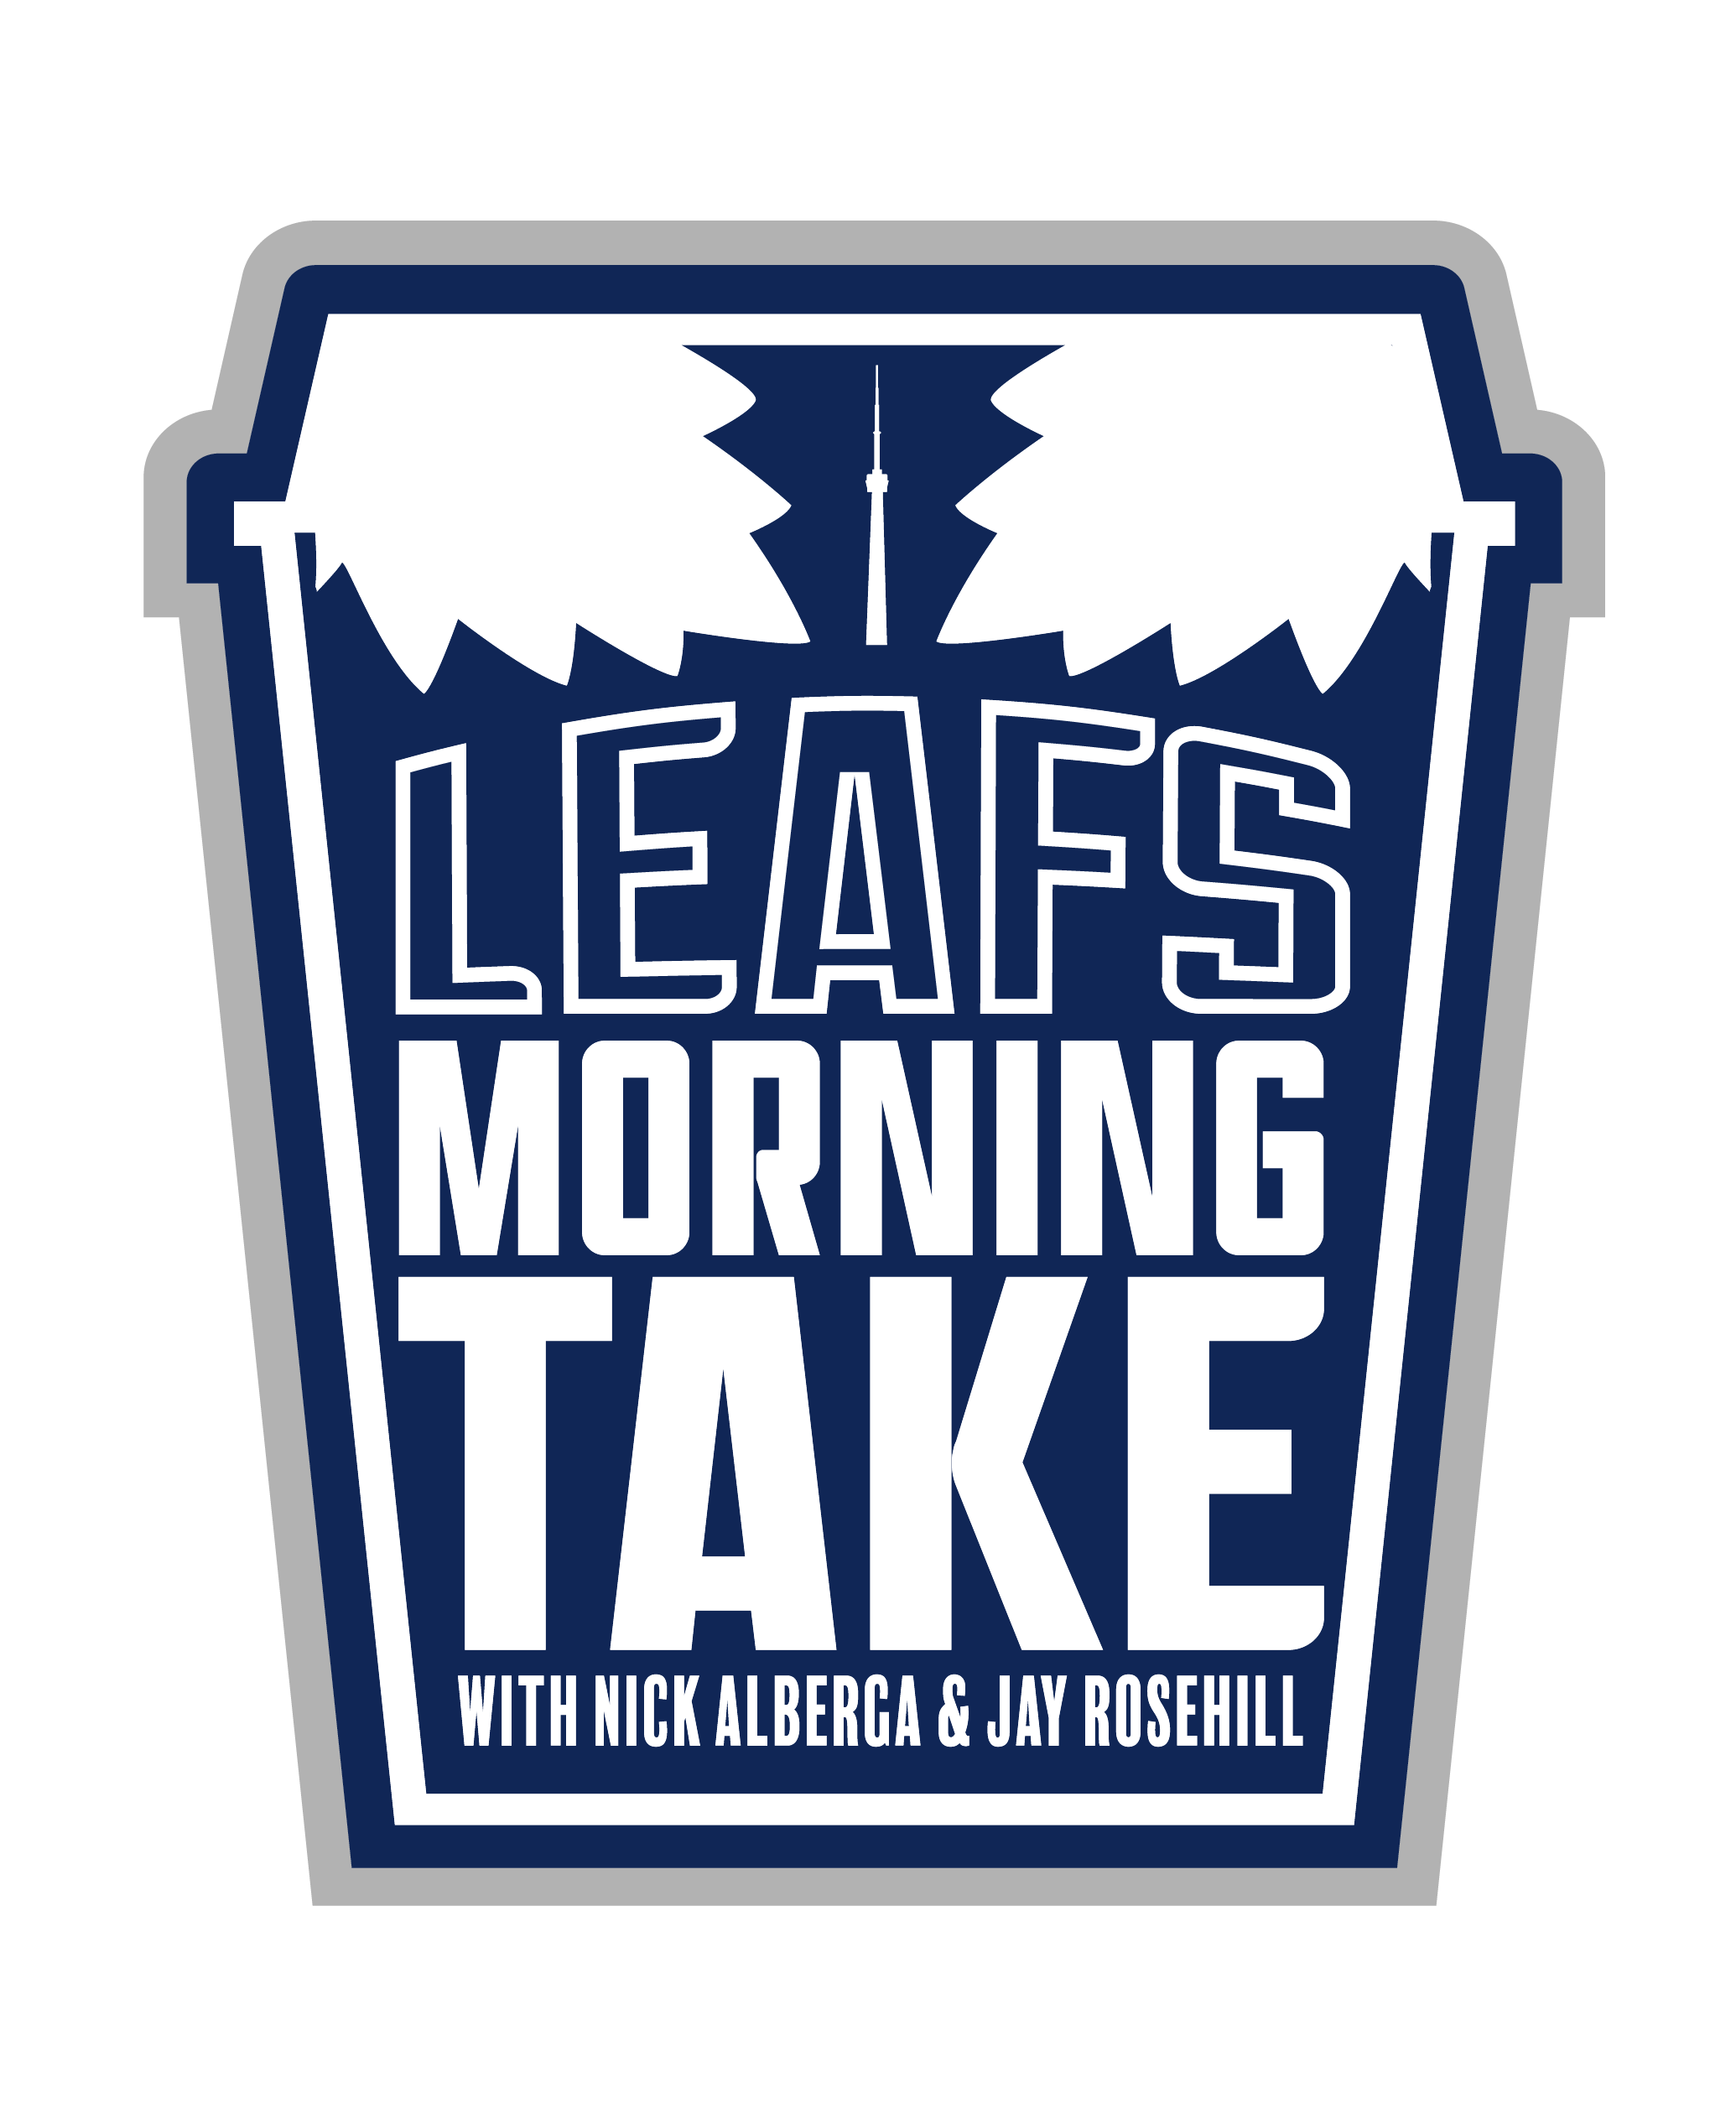 Leafs Morning Take